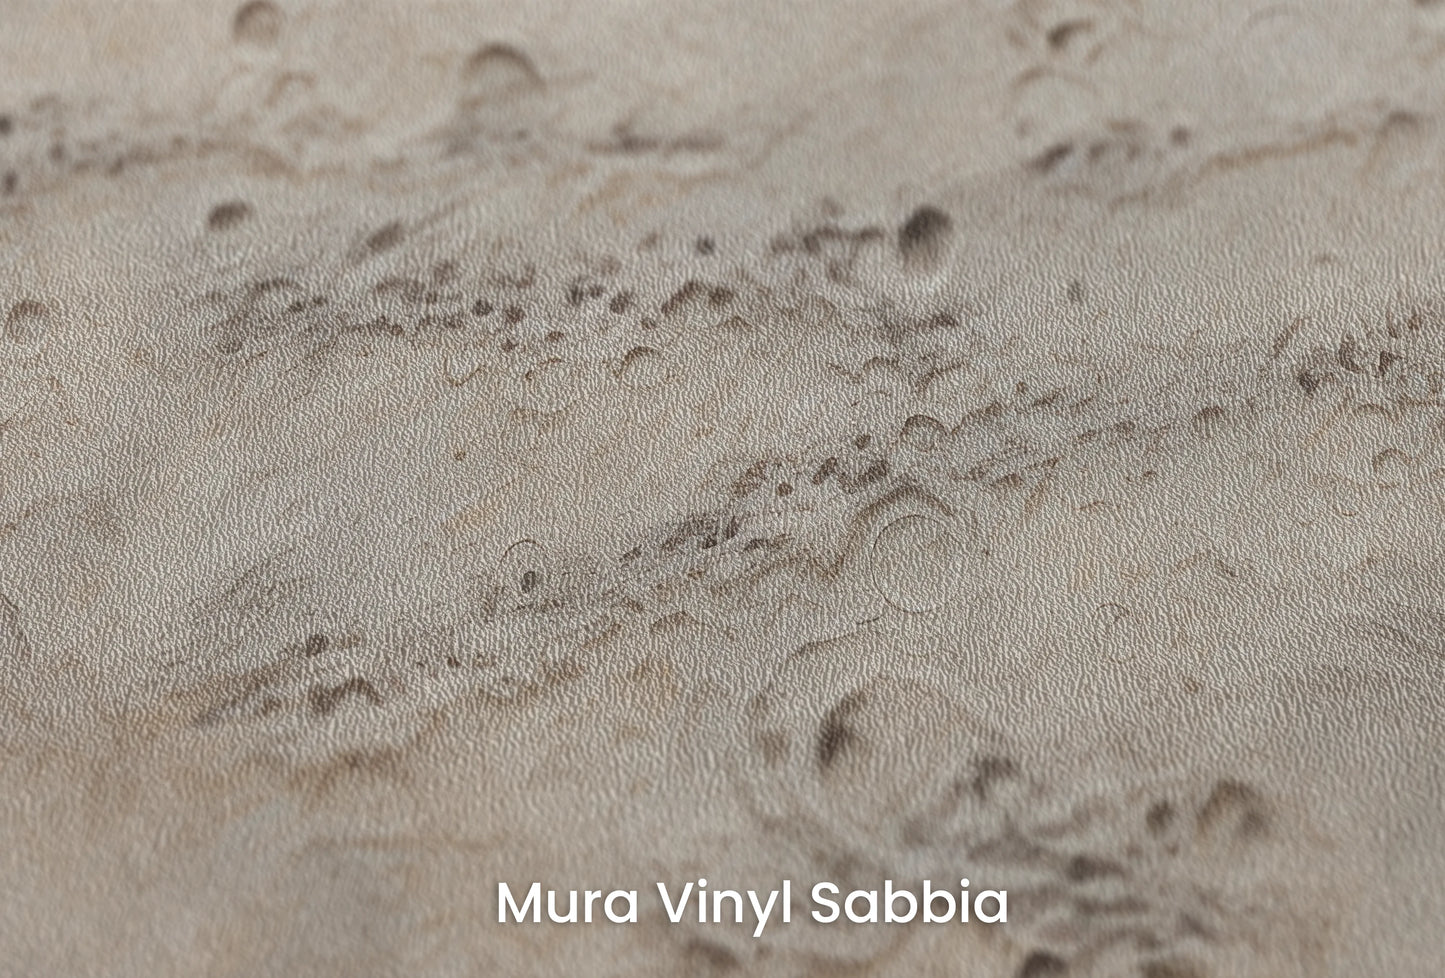 Zbliżenie na artystyczną fototapetę o nazwie Lunar Terrain na podłożu Mura Vinyl Sabbia struktura grubego ziarna piasku.